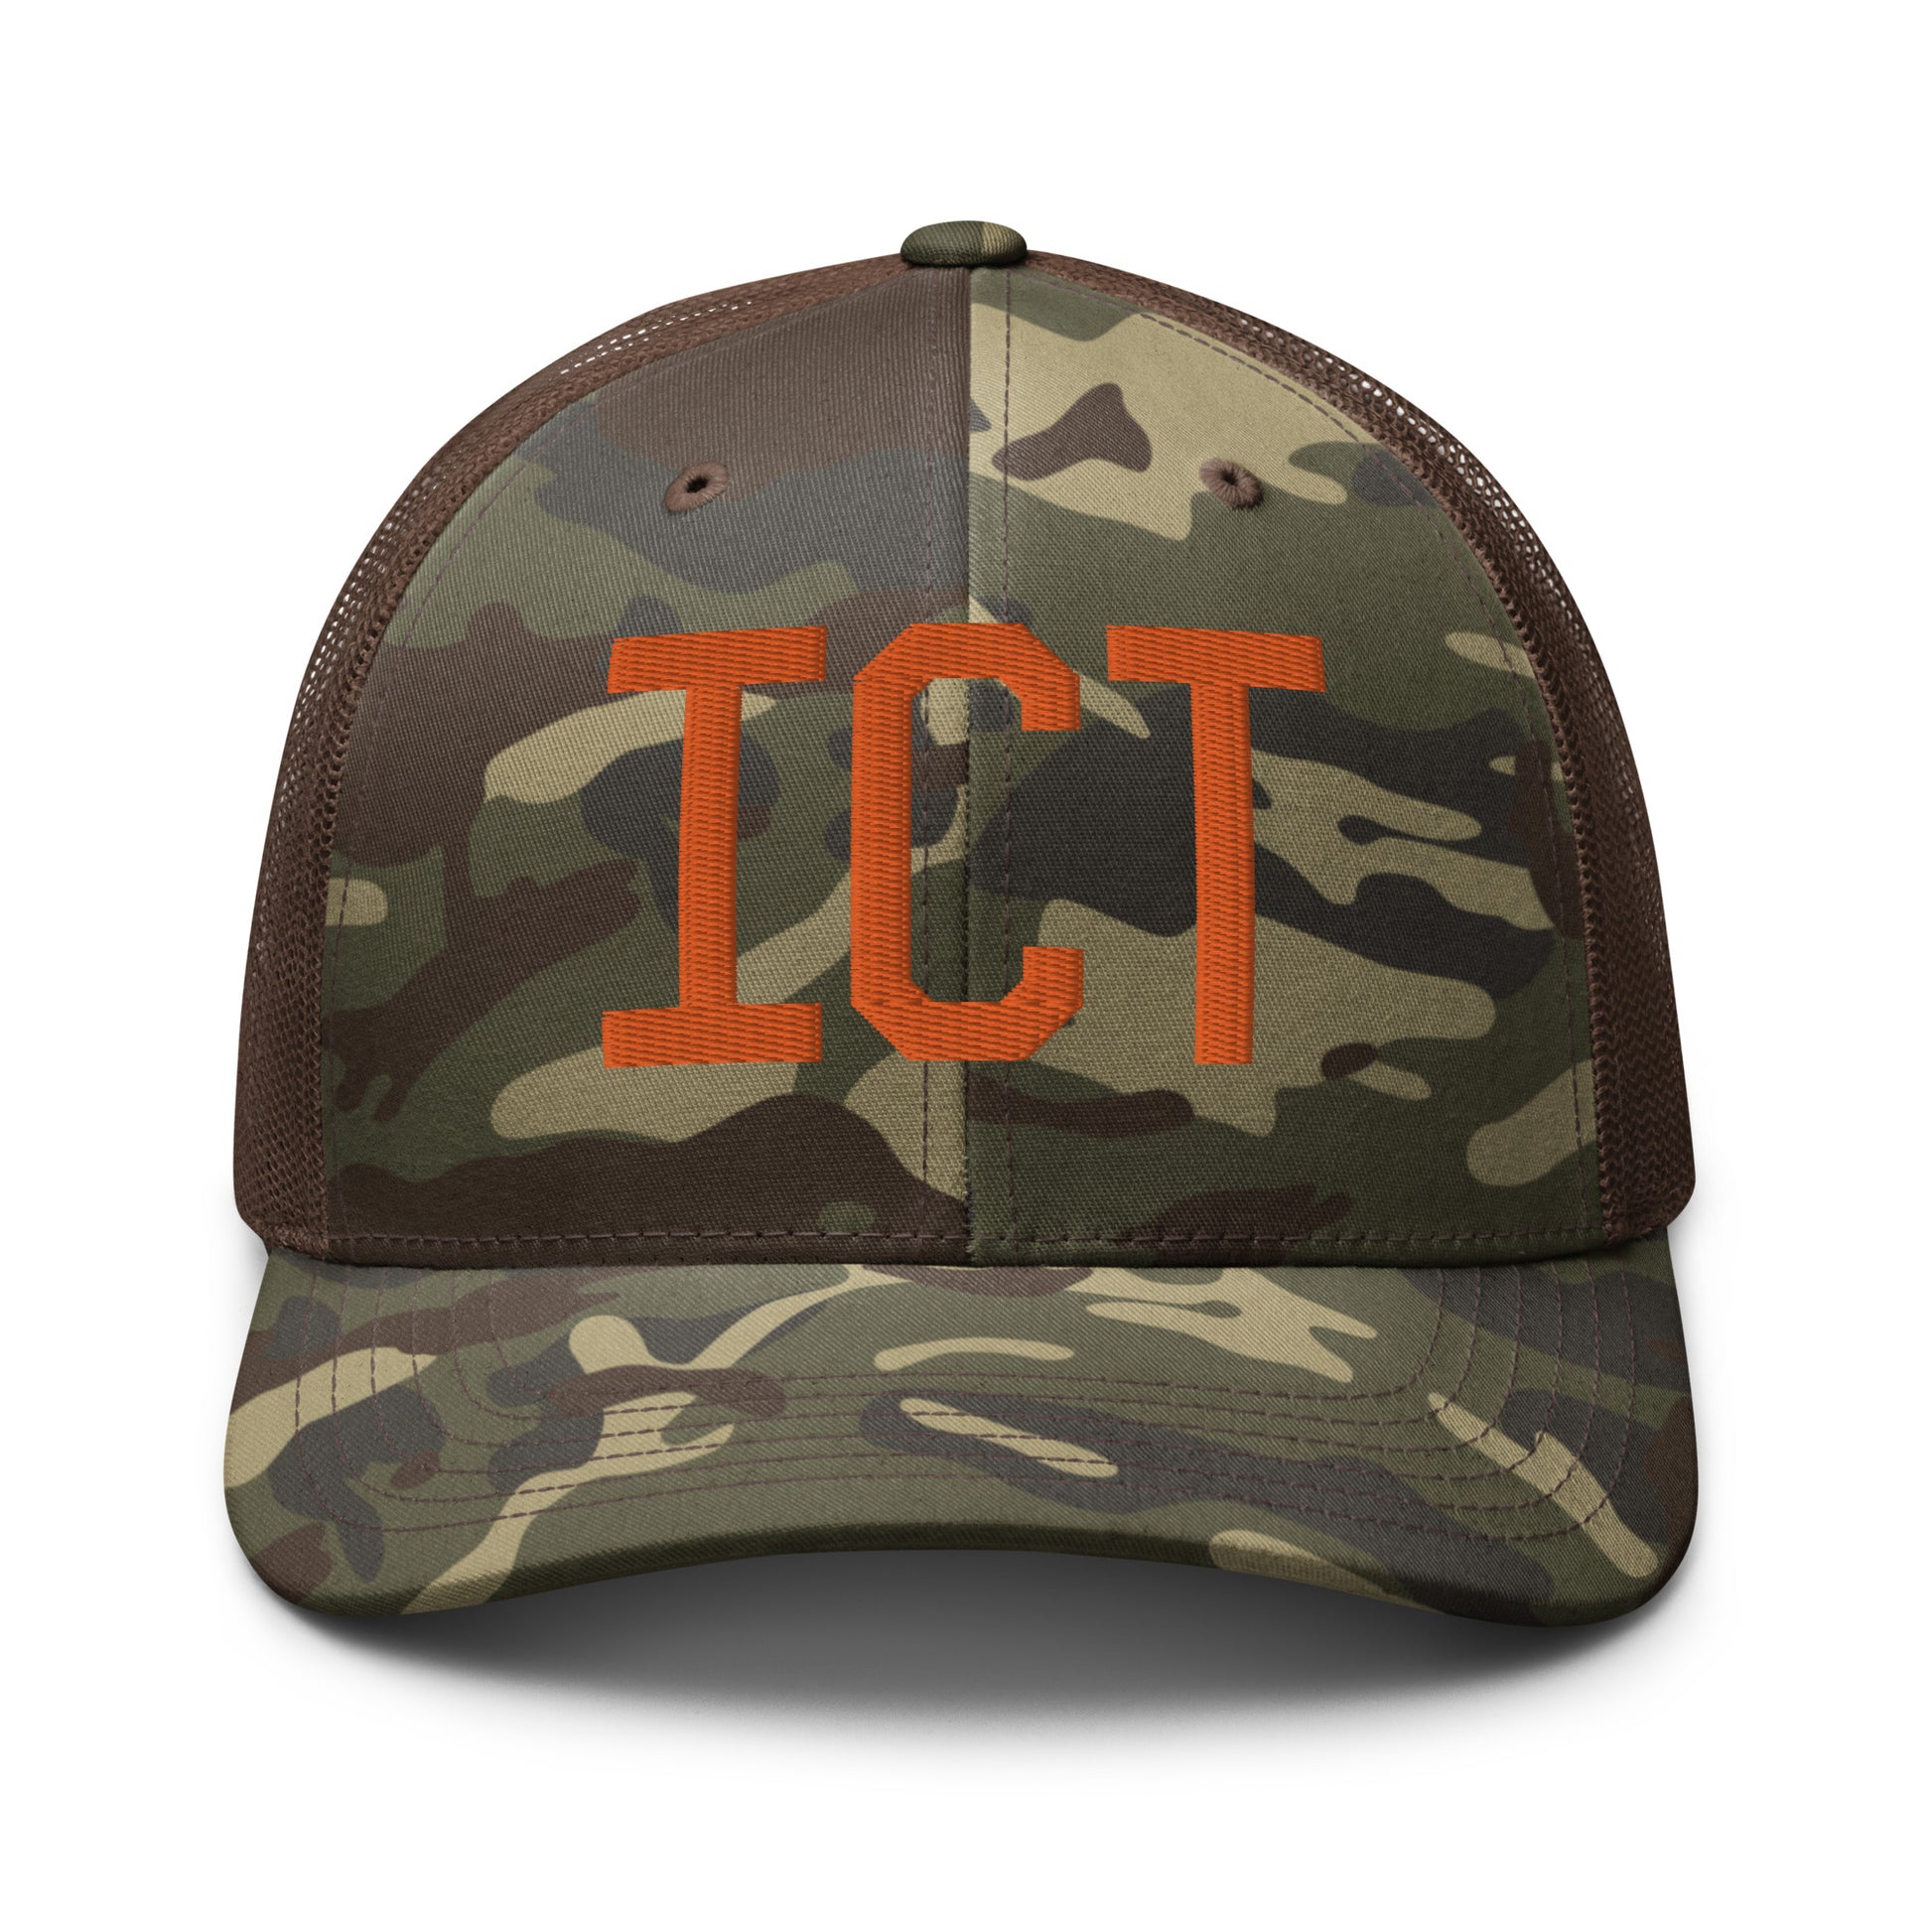 Airport Code Camouflage Trucker Hat - Orange • ICT Wichita • YHM Designs - Image 13